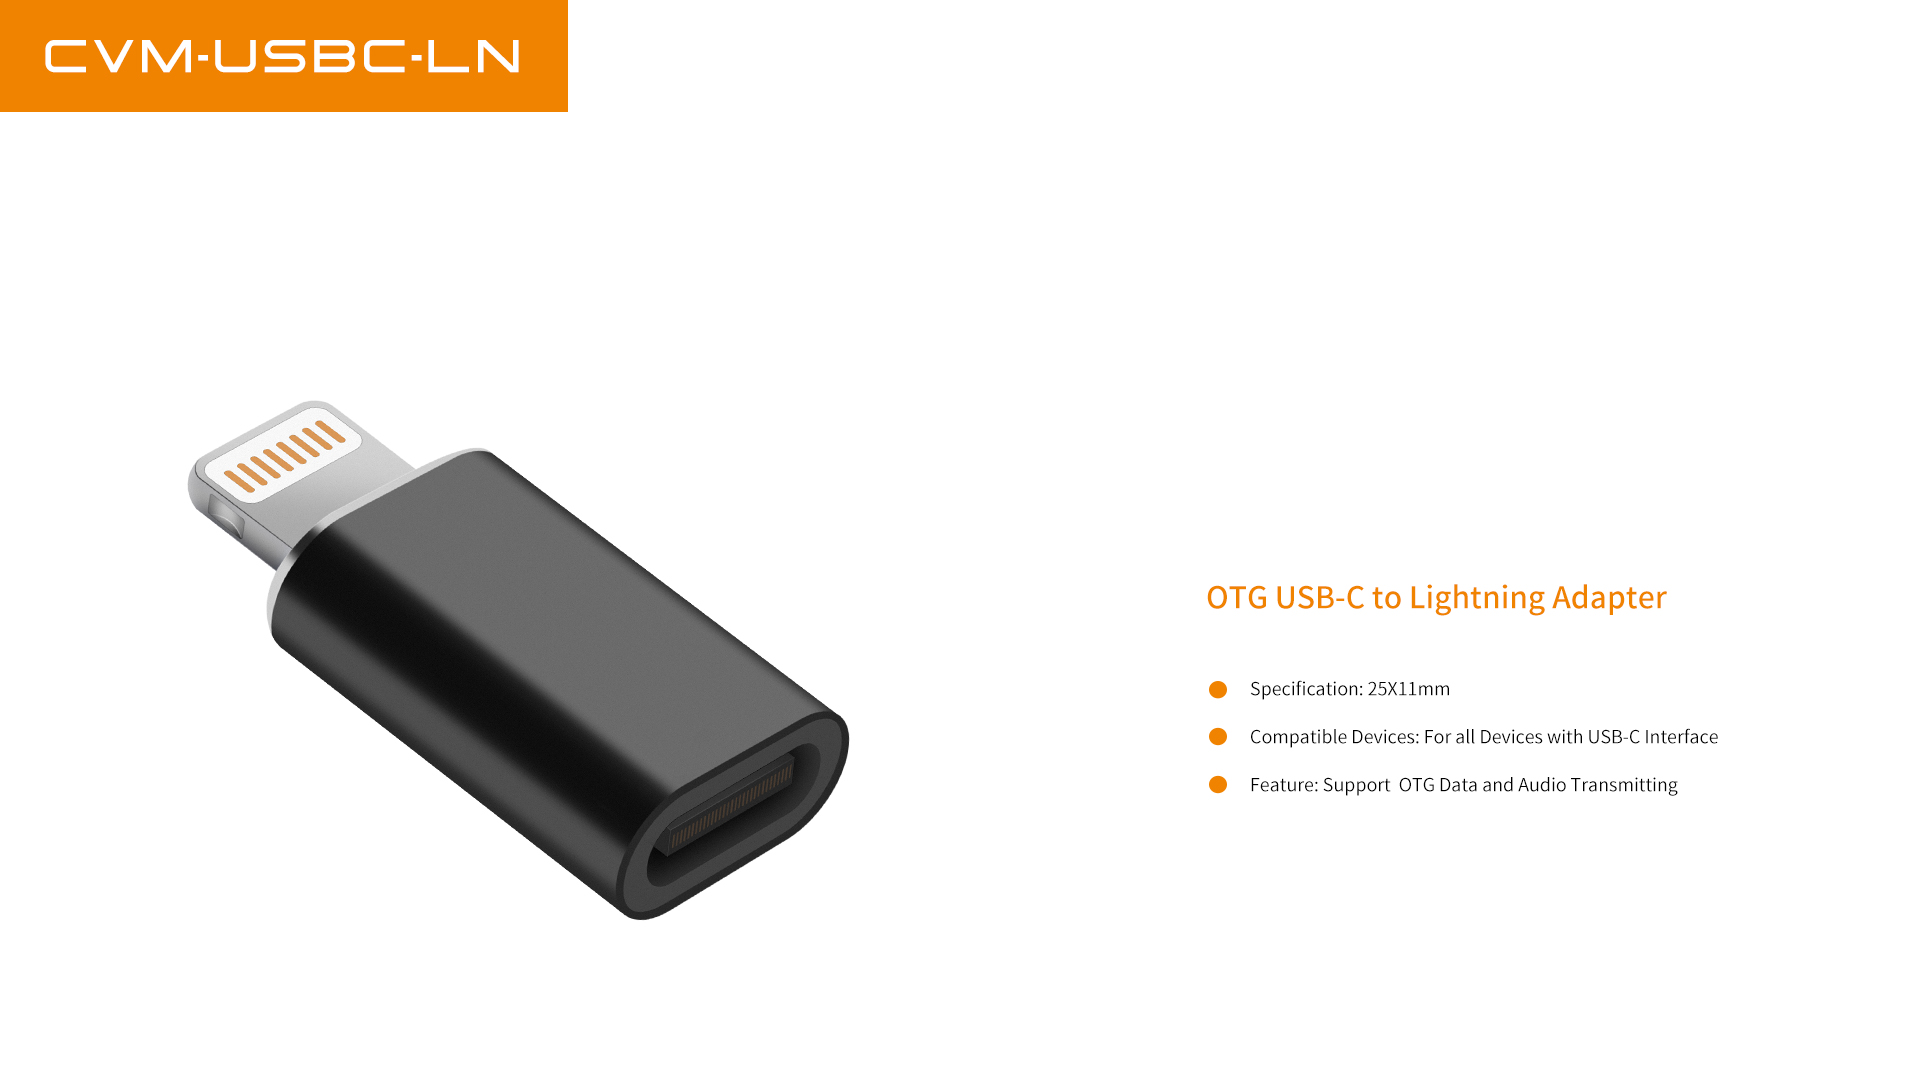 CVM-USBC-LN OTG USB-C to Lightning Adapter